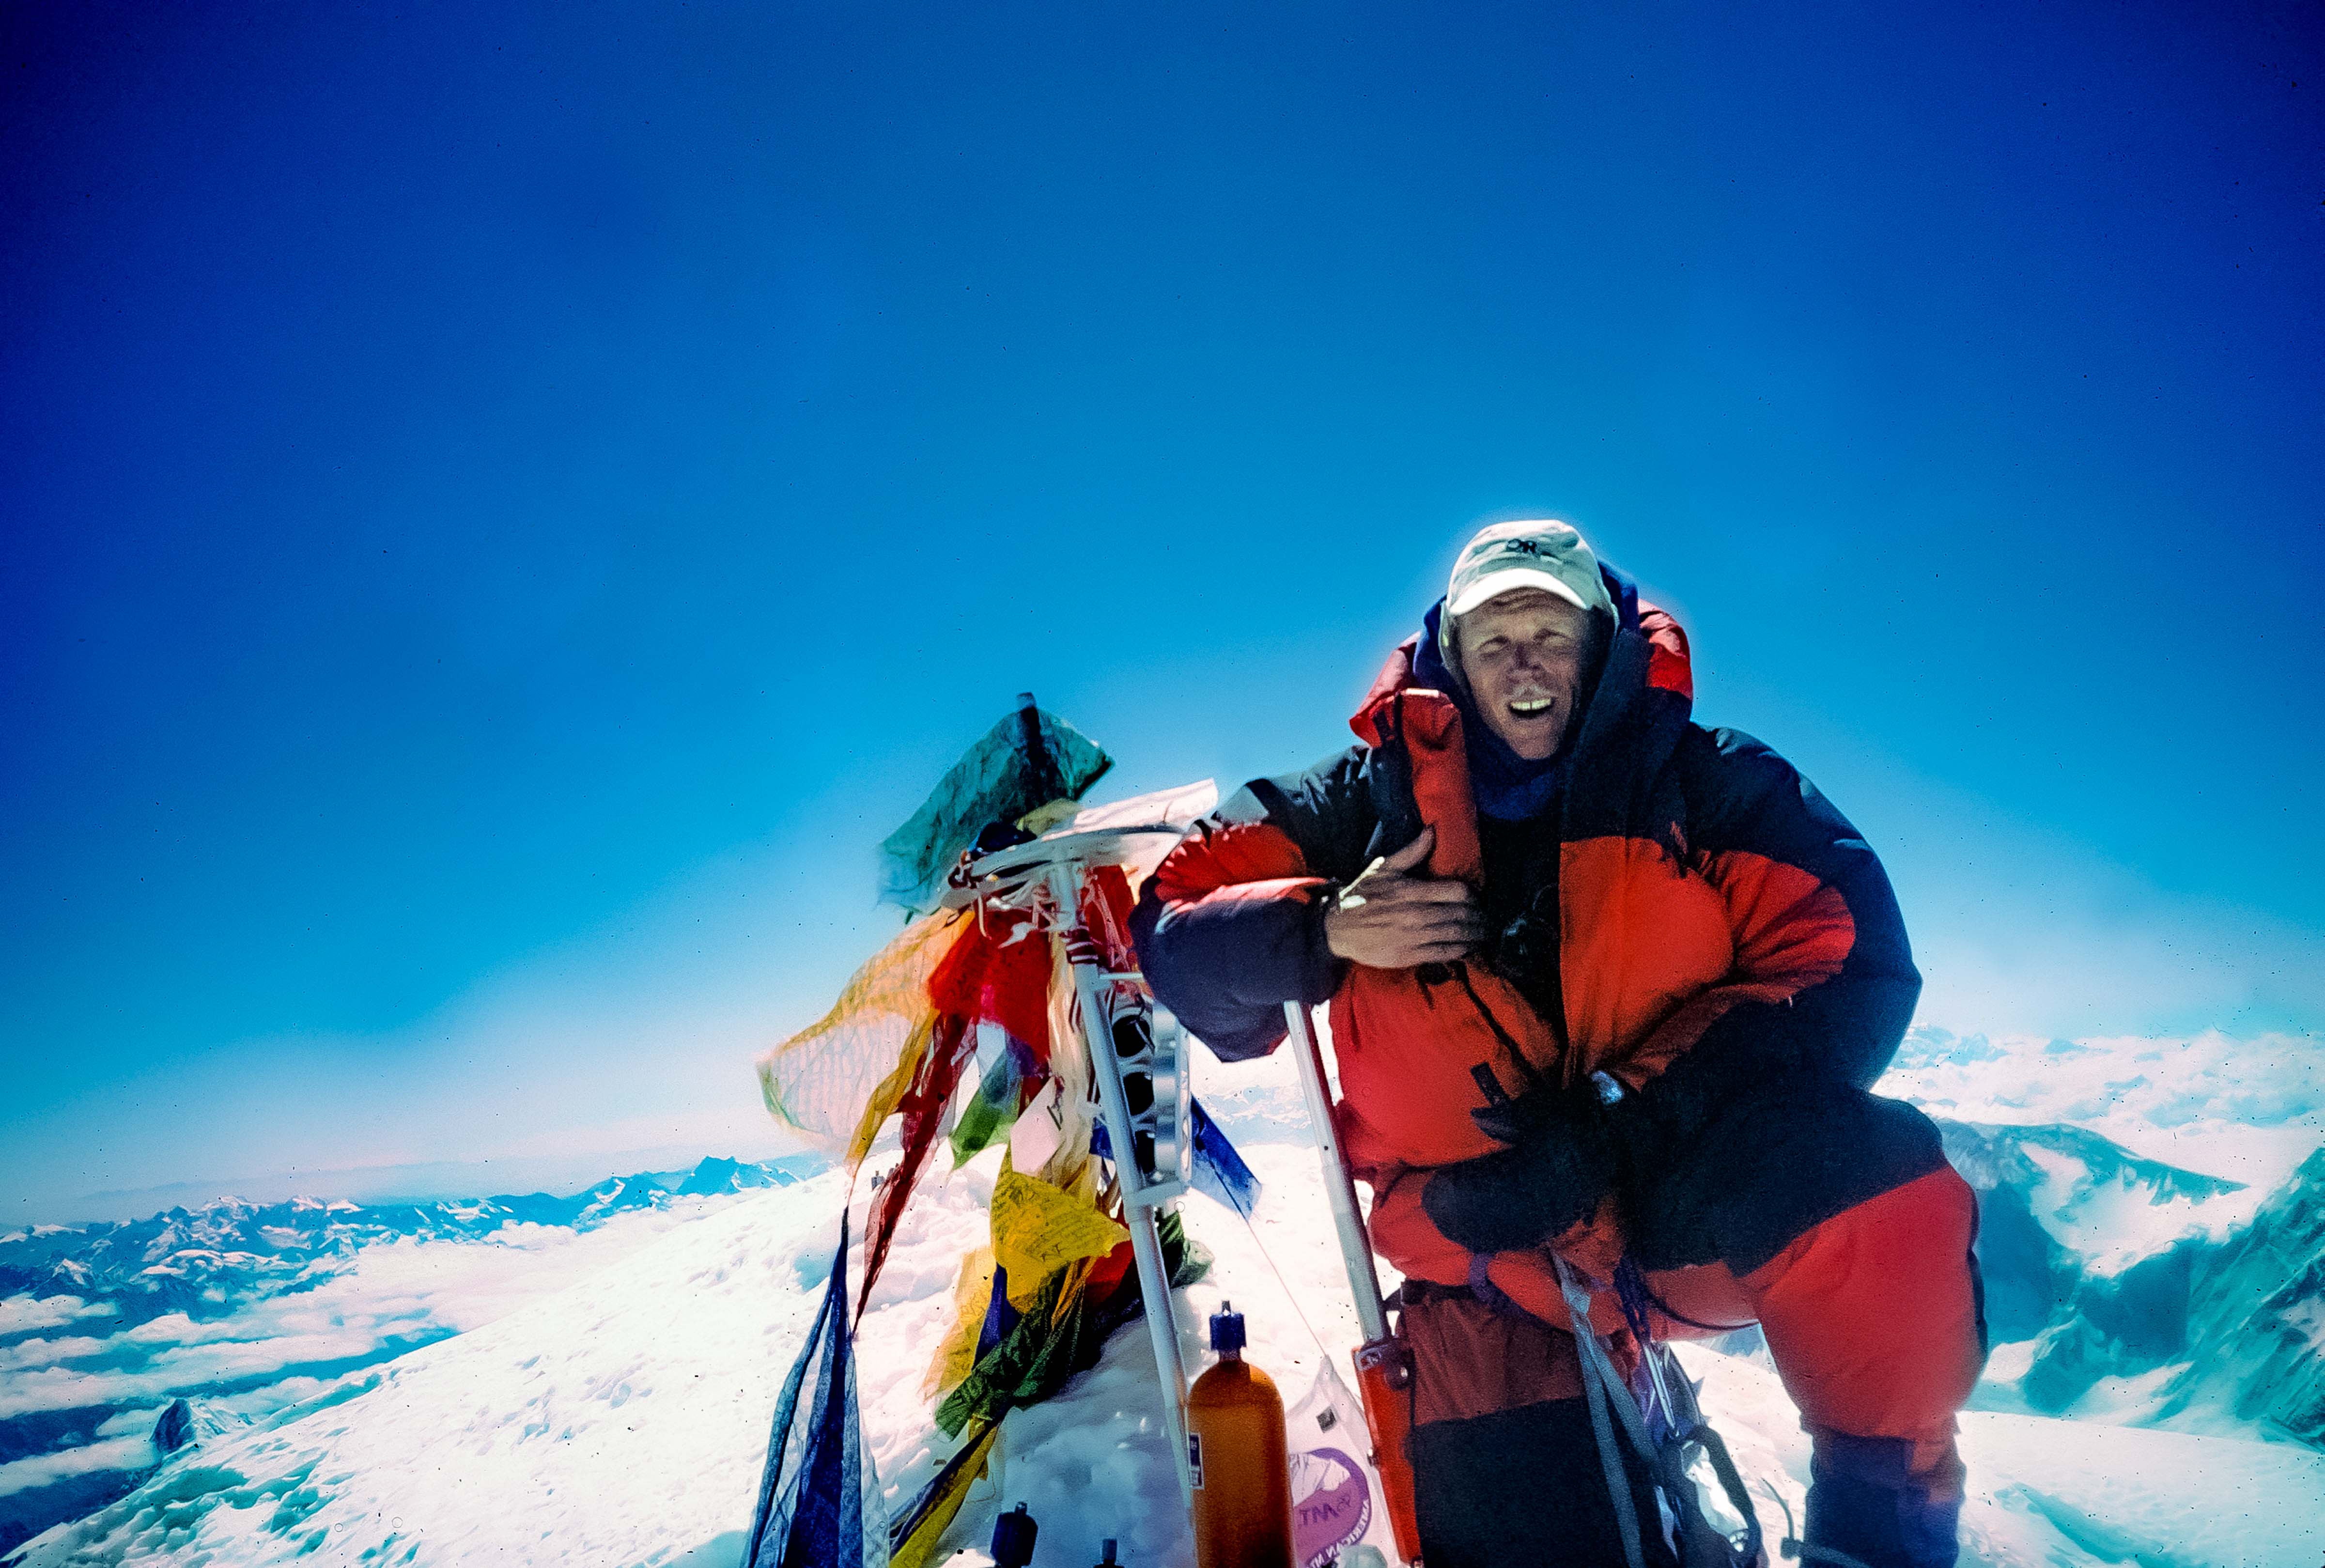 China Xizang (Tibet) Prov, Jeff Shea Everest Summit May 24, 1995 9a.m., 1995, 35mmSlide